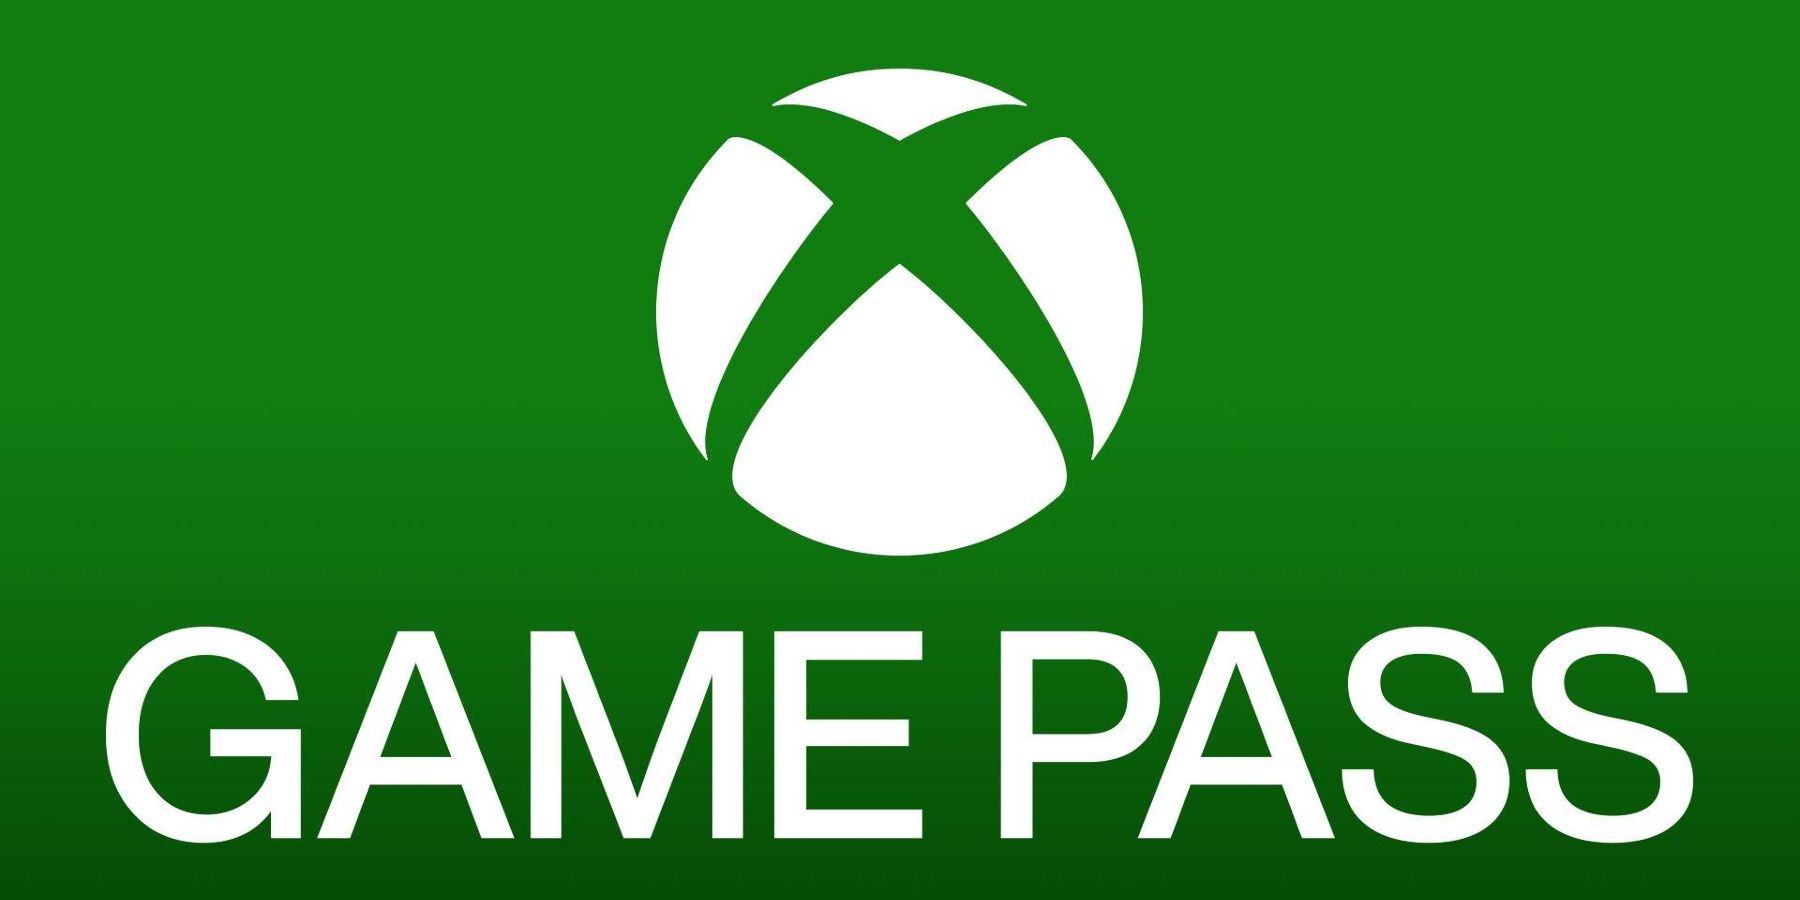 تحديث: عدد مشتركي Xbox Game Pass يبلغ 30 مليونًا ، كما يقول الرئيس التنفيذي لشركة Take-Two